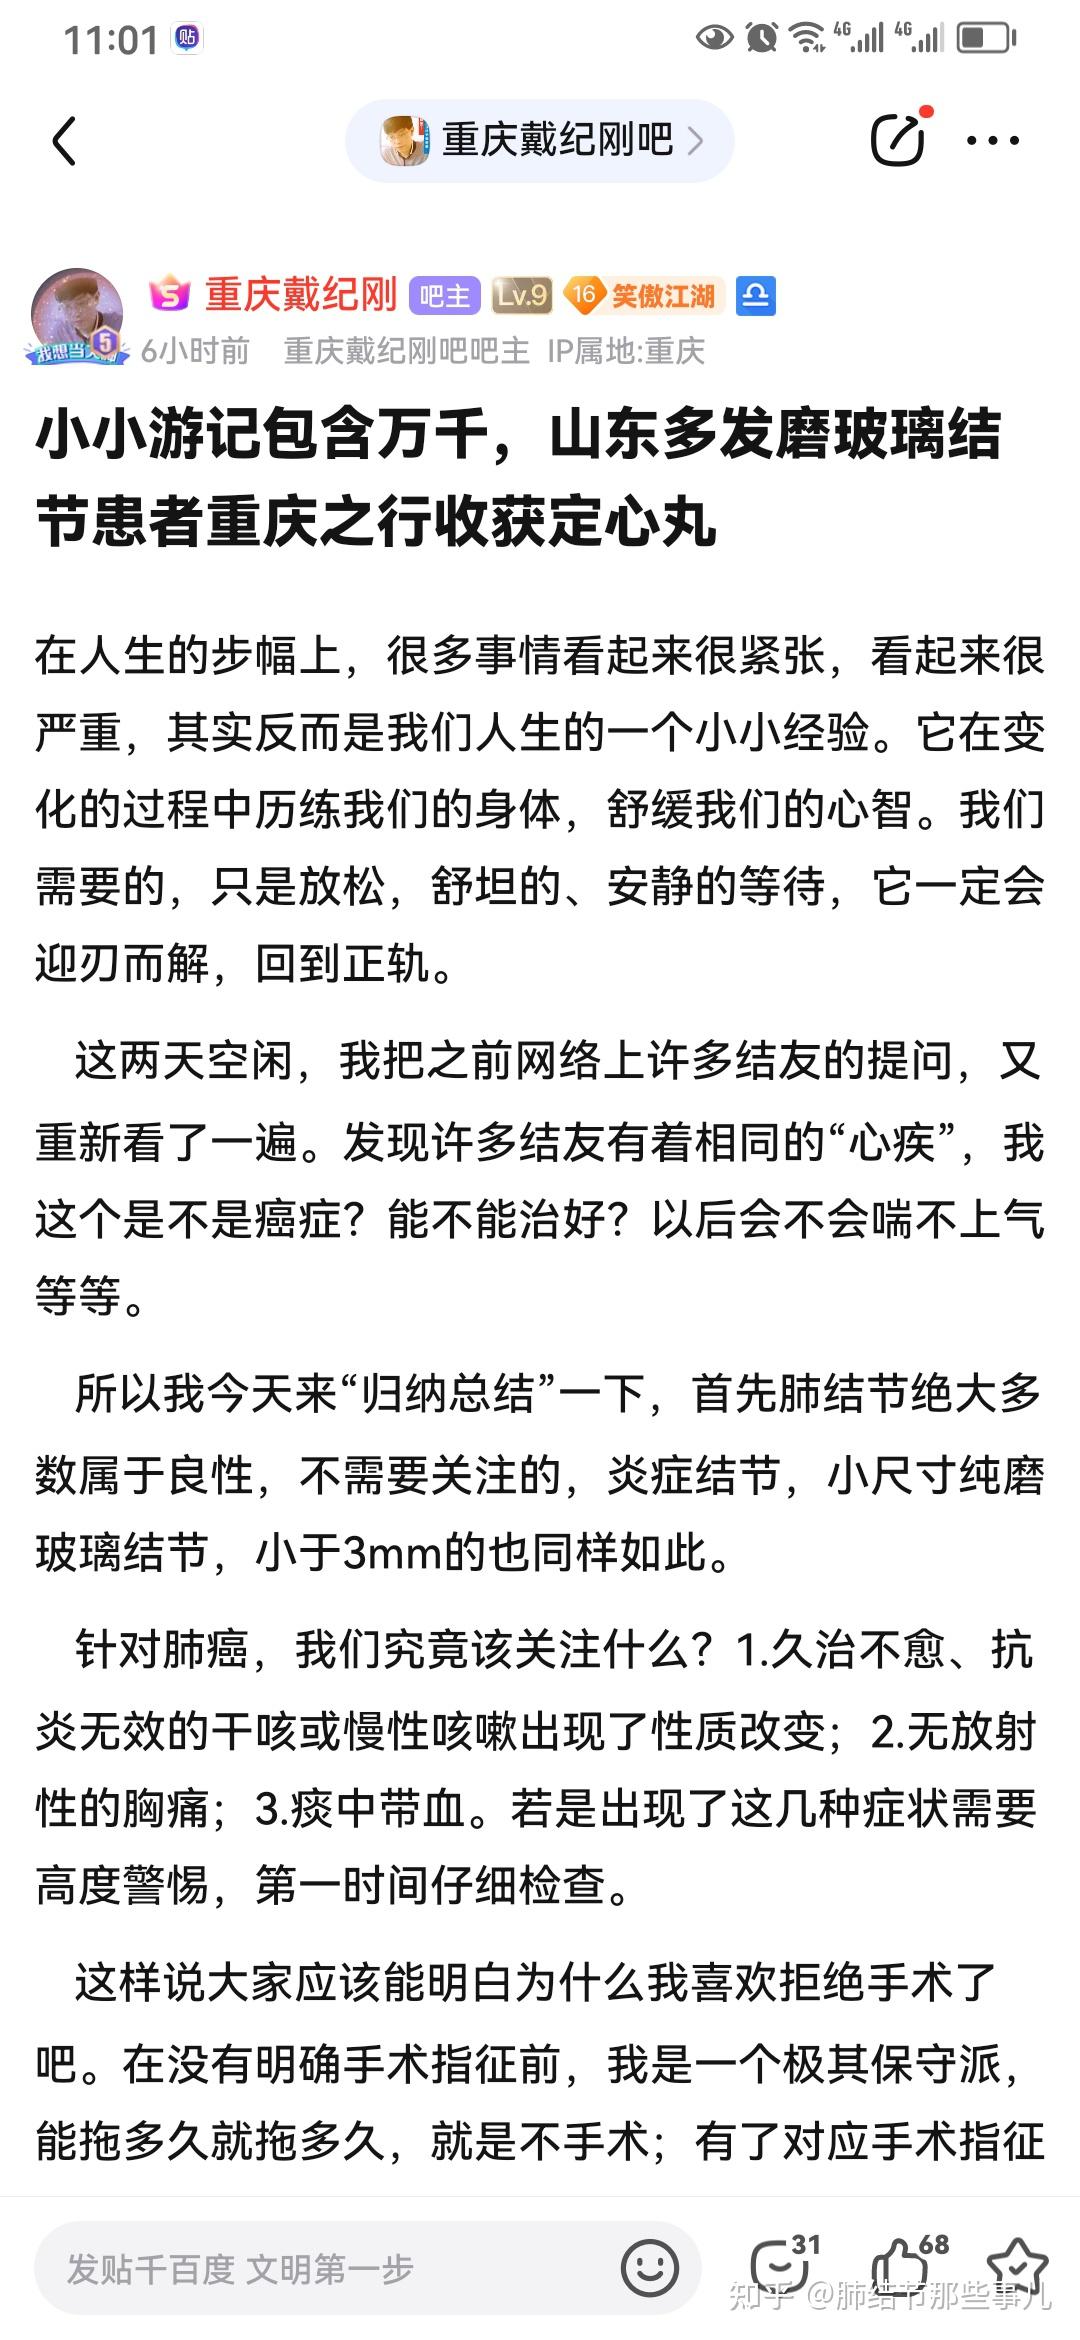 广安门中医院黄牛加号说到必须做到广安门医院黄牛挂号挂一个号费用是多少?